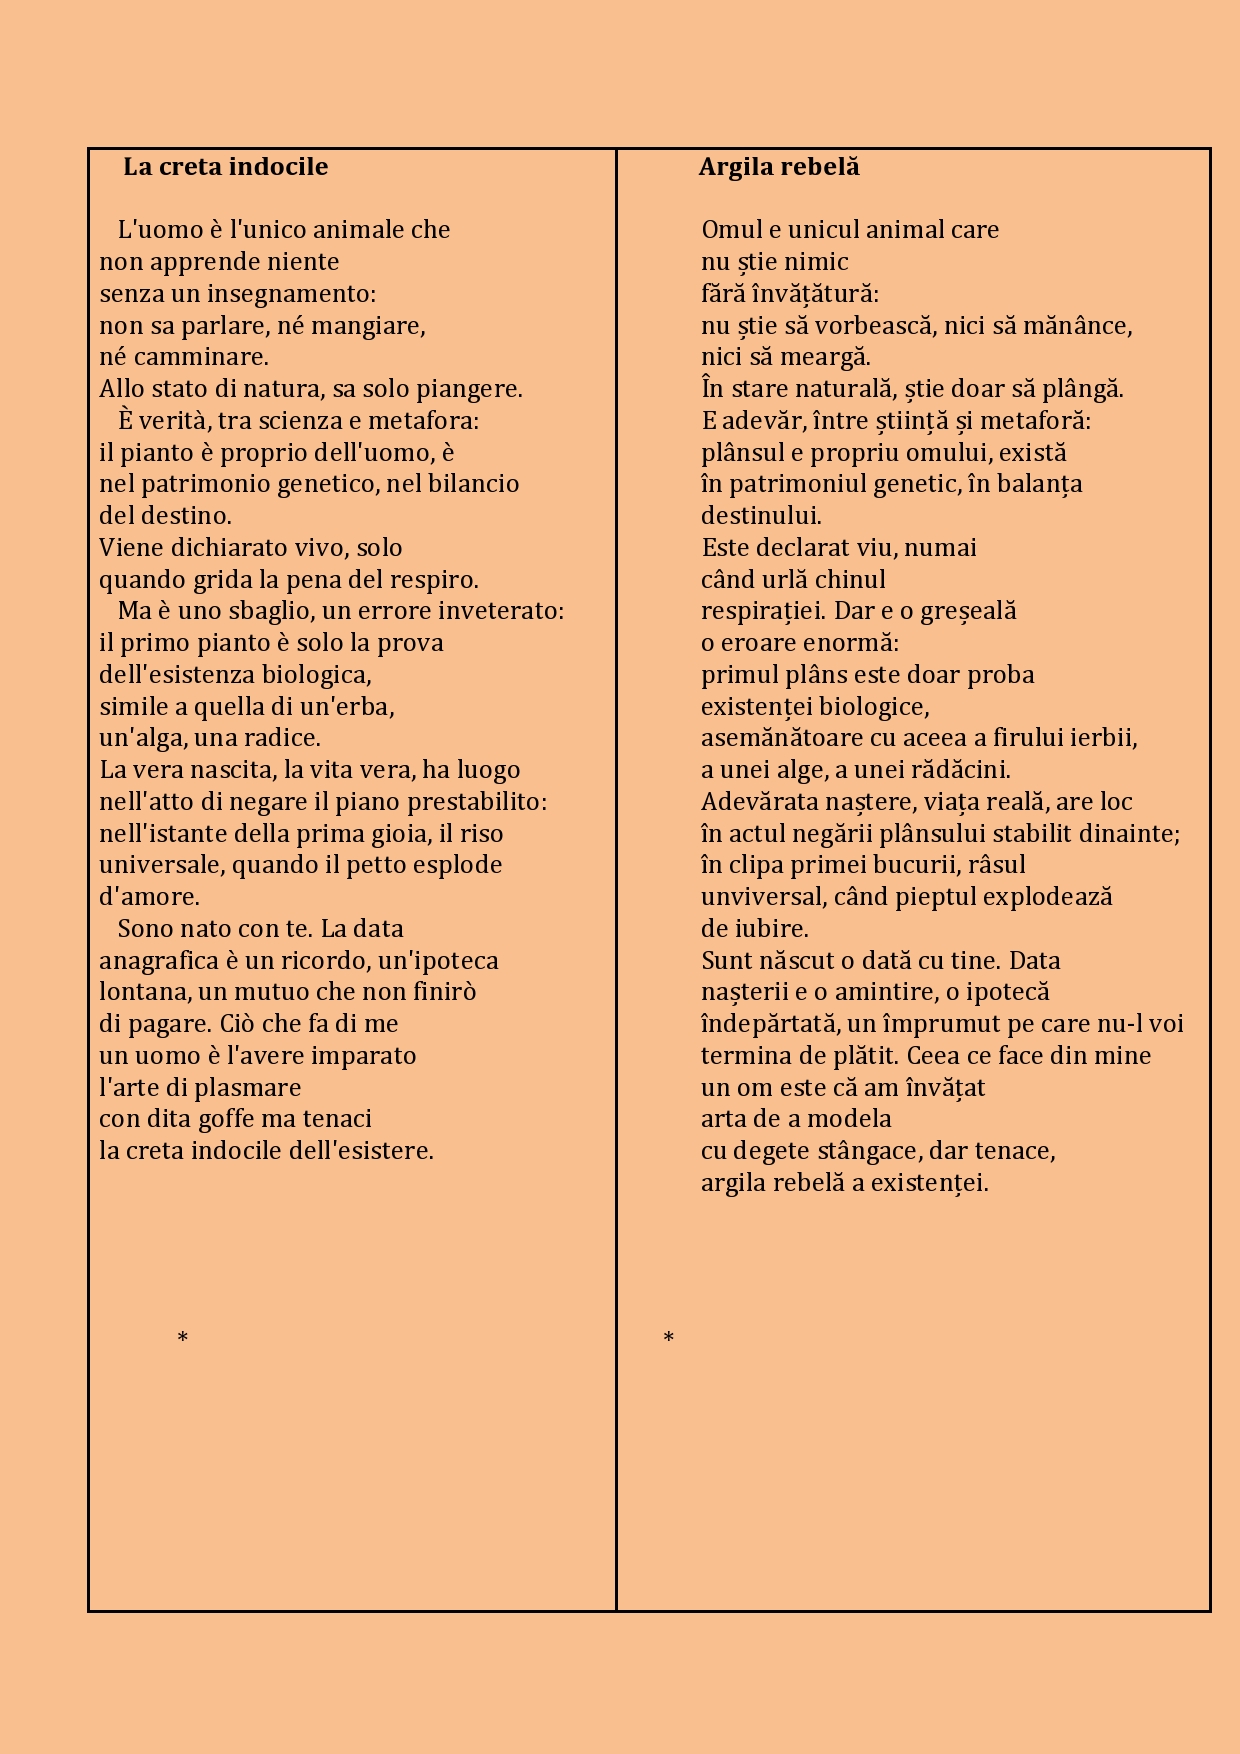 La creta indocile - selezione Italiano Romeno-page0001